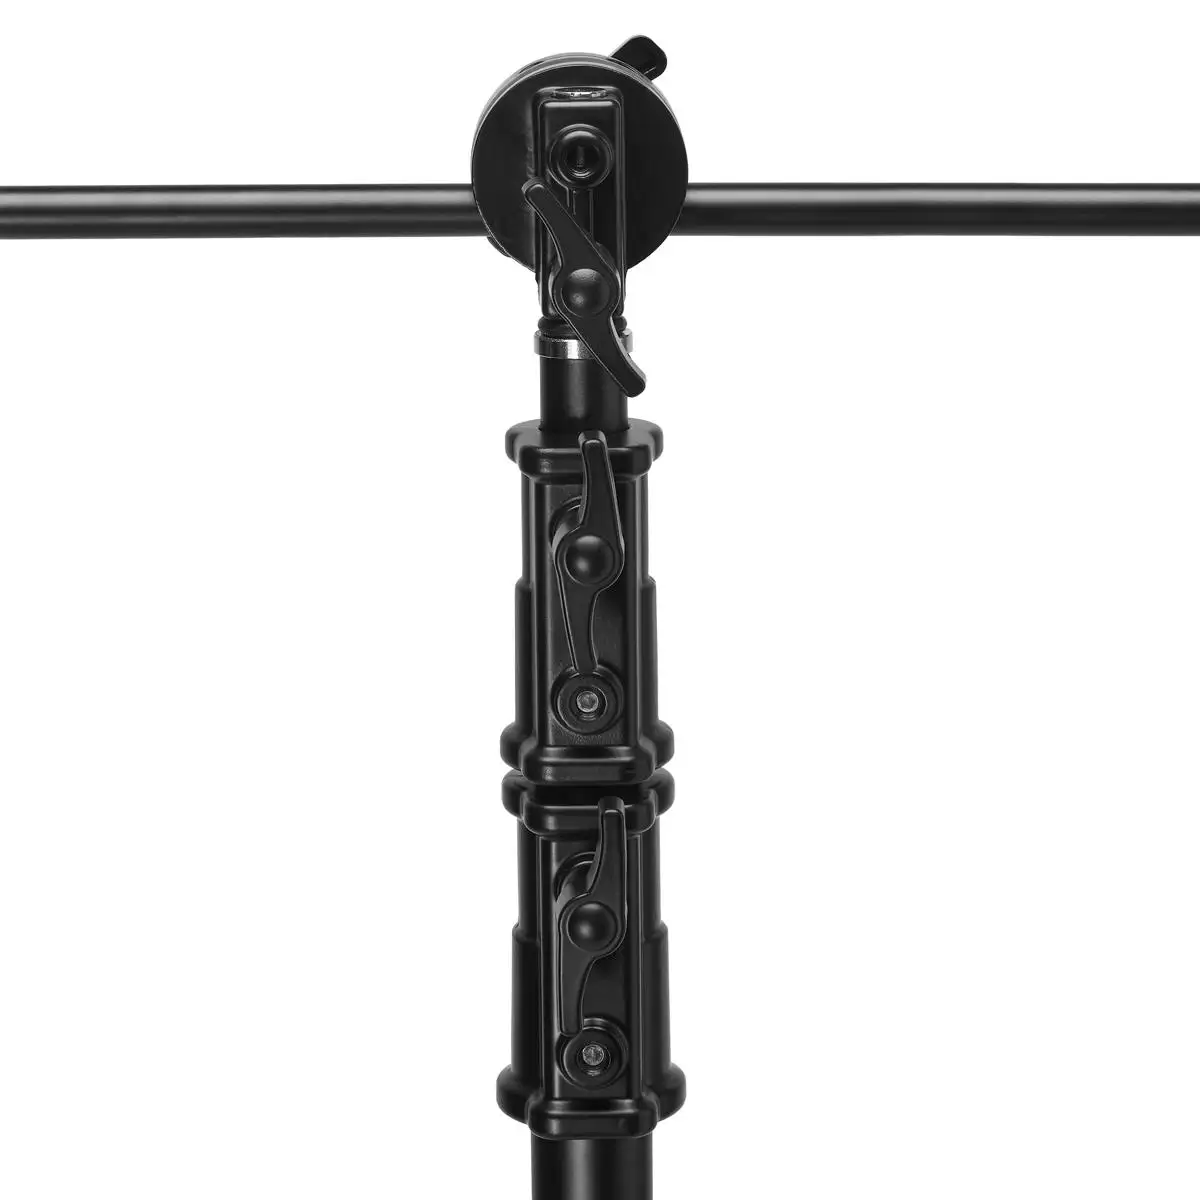 Supporto C per impieghi gravosi in acciaio inossidabile nero 1.5-3.3 metri treppiede robusto per fotografia regolabile con barra trasversale